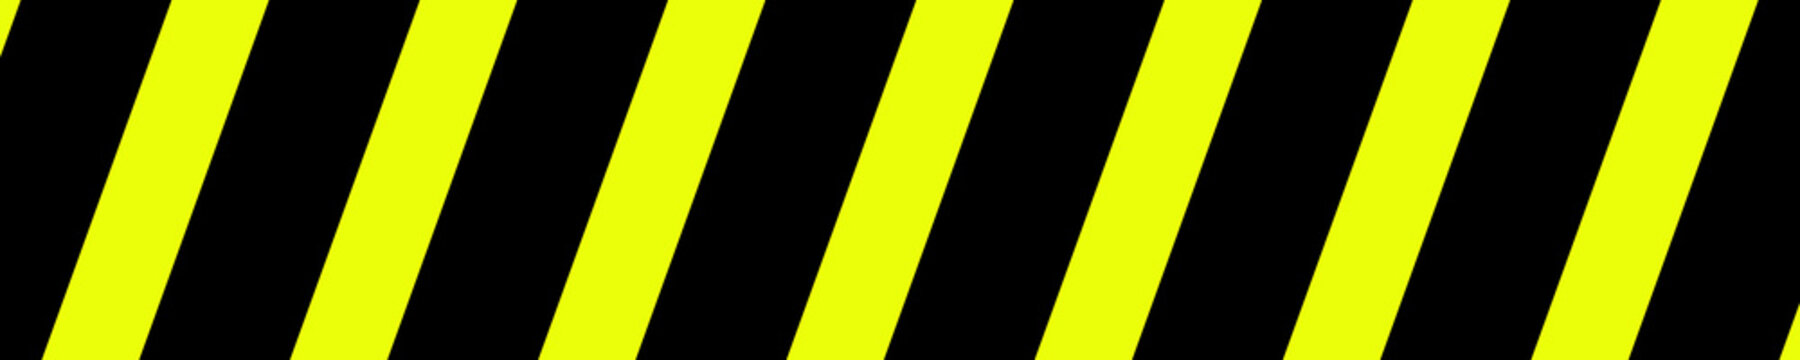 Absperrband Hintergrund gelb schwarz